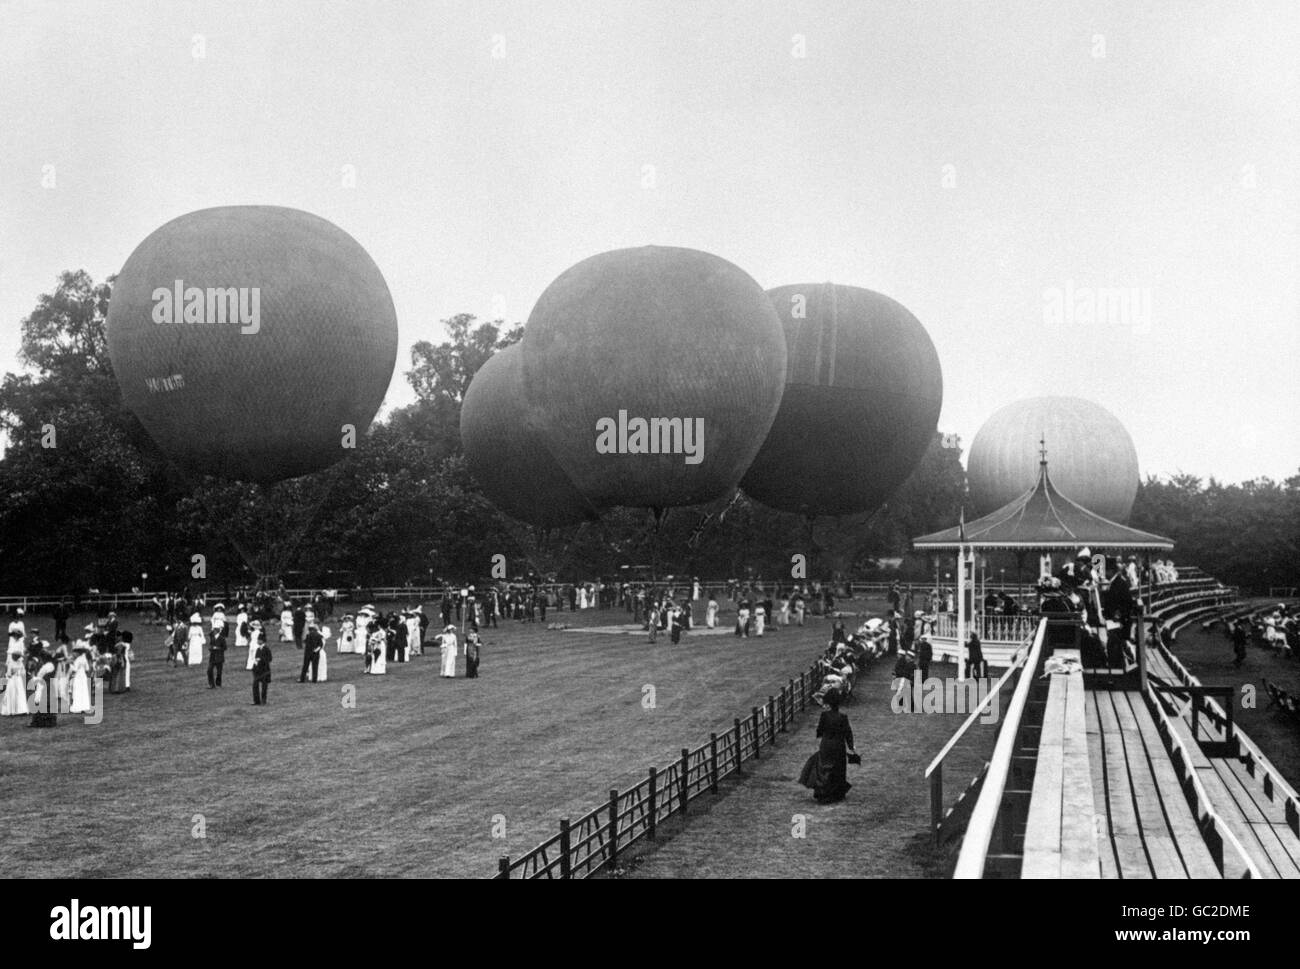 Luftfahrt - Ballonwettbewerb - Hurlingham Club. Eine allgemeine Ansicht eines Heißluftballonwettbewerbs im Hurlingham Club. Stockfoto